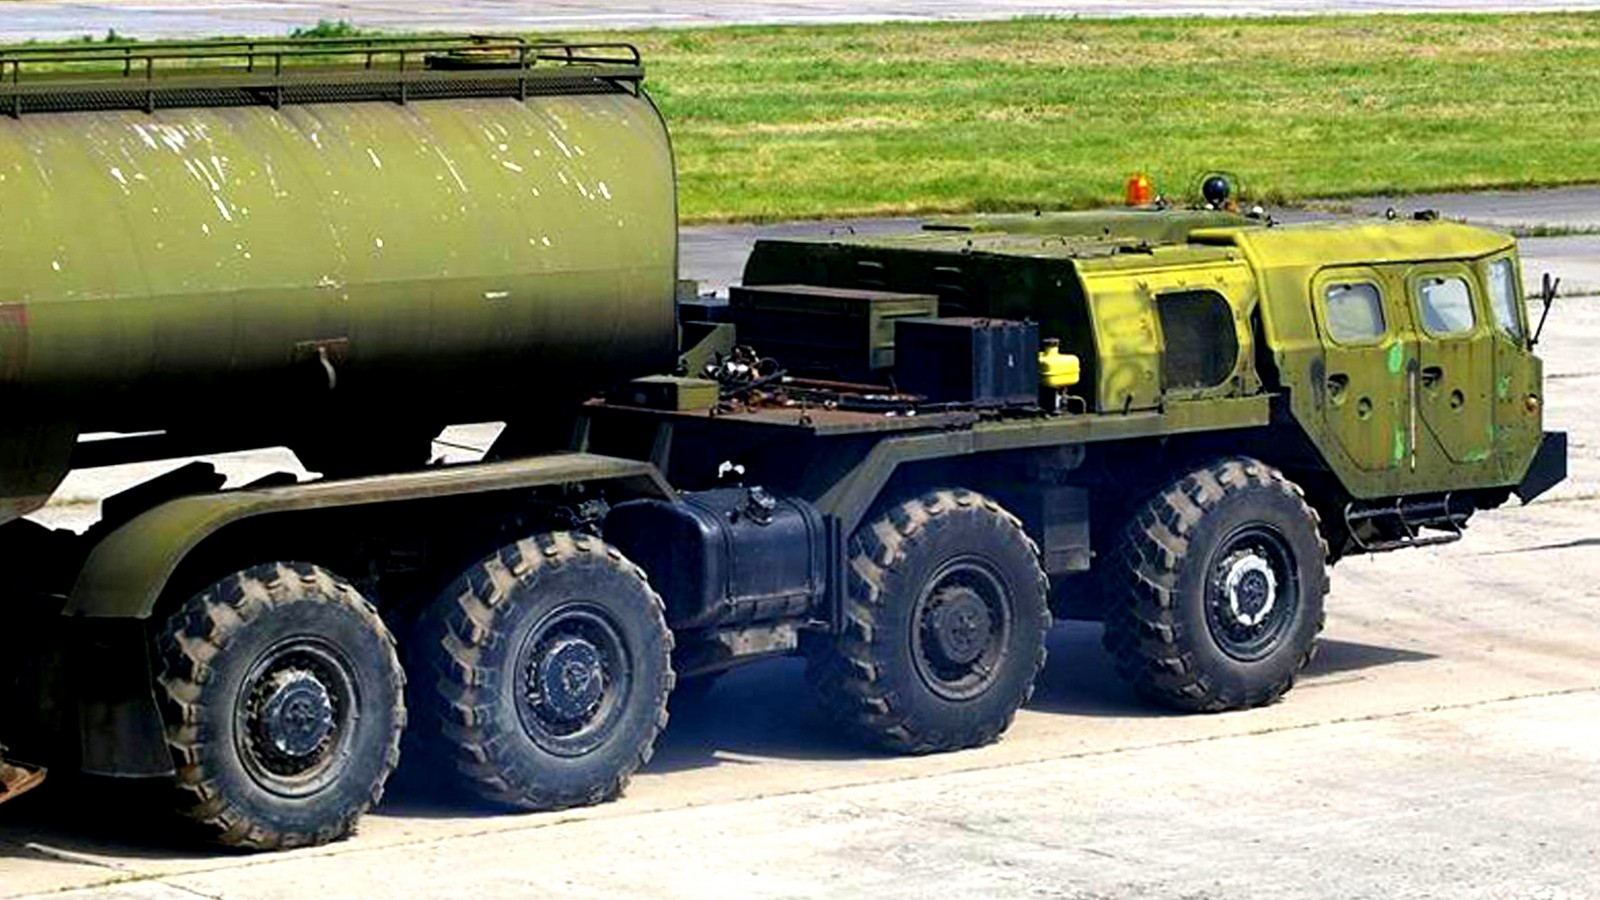 Усиленный седельный тягач МАЗ-74103 без лебедки и третьей кабины (фото М. Чега)